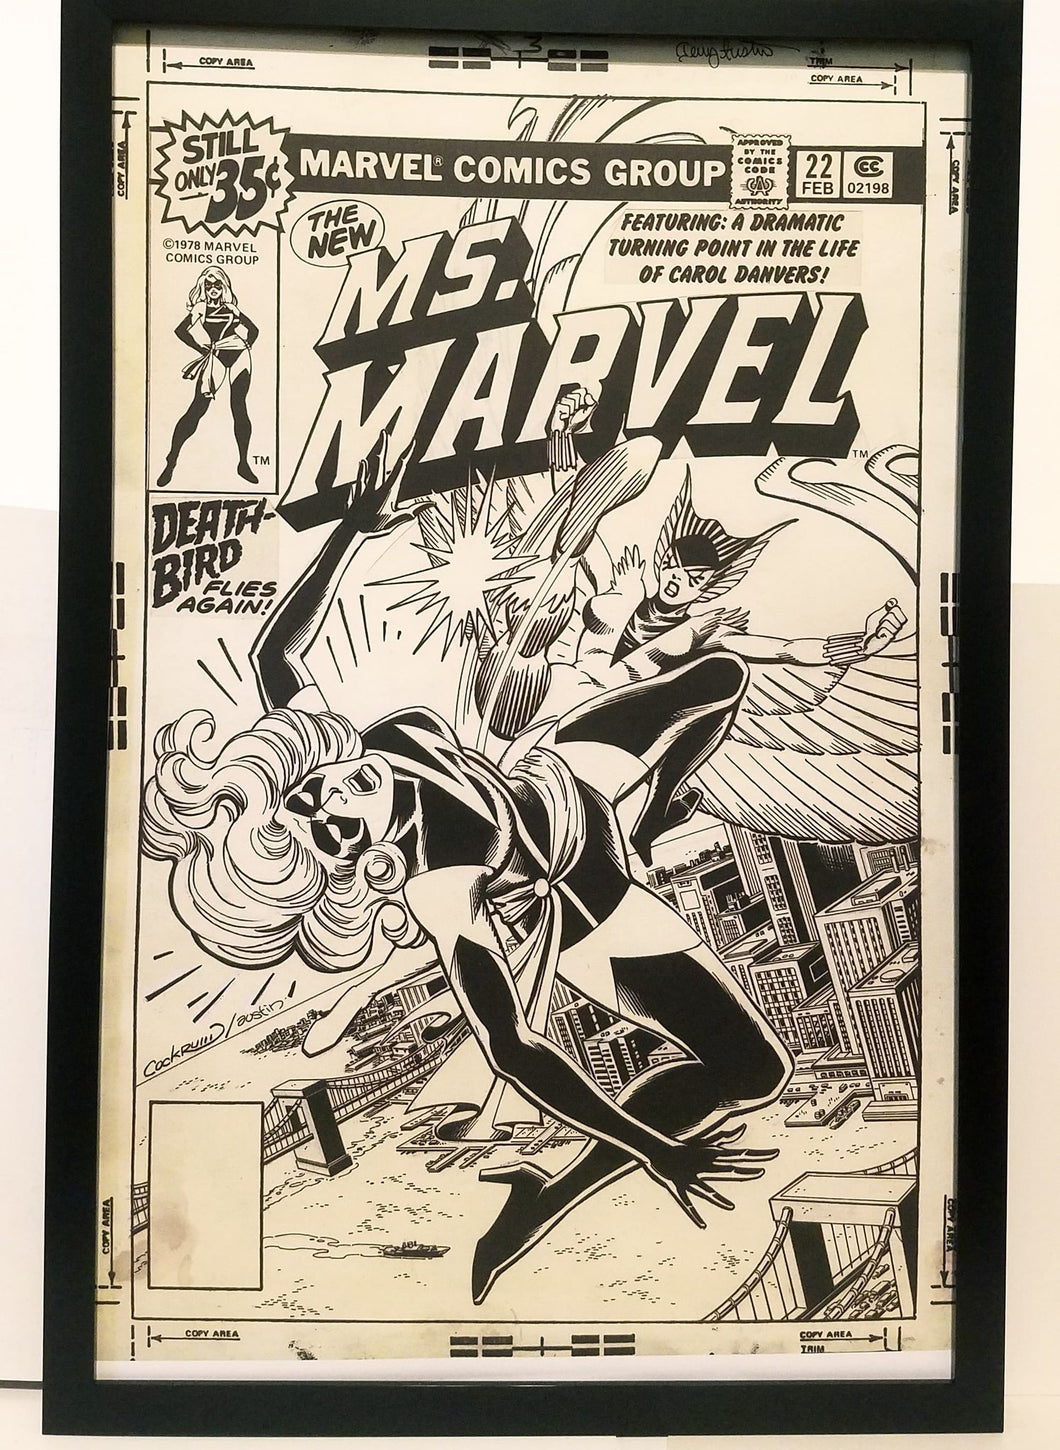 Ms. Marvel #22 by Dave Cockrum 11x17 FRAMED Original Art Poster Marvel Comics